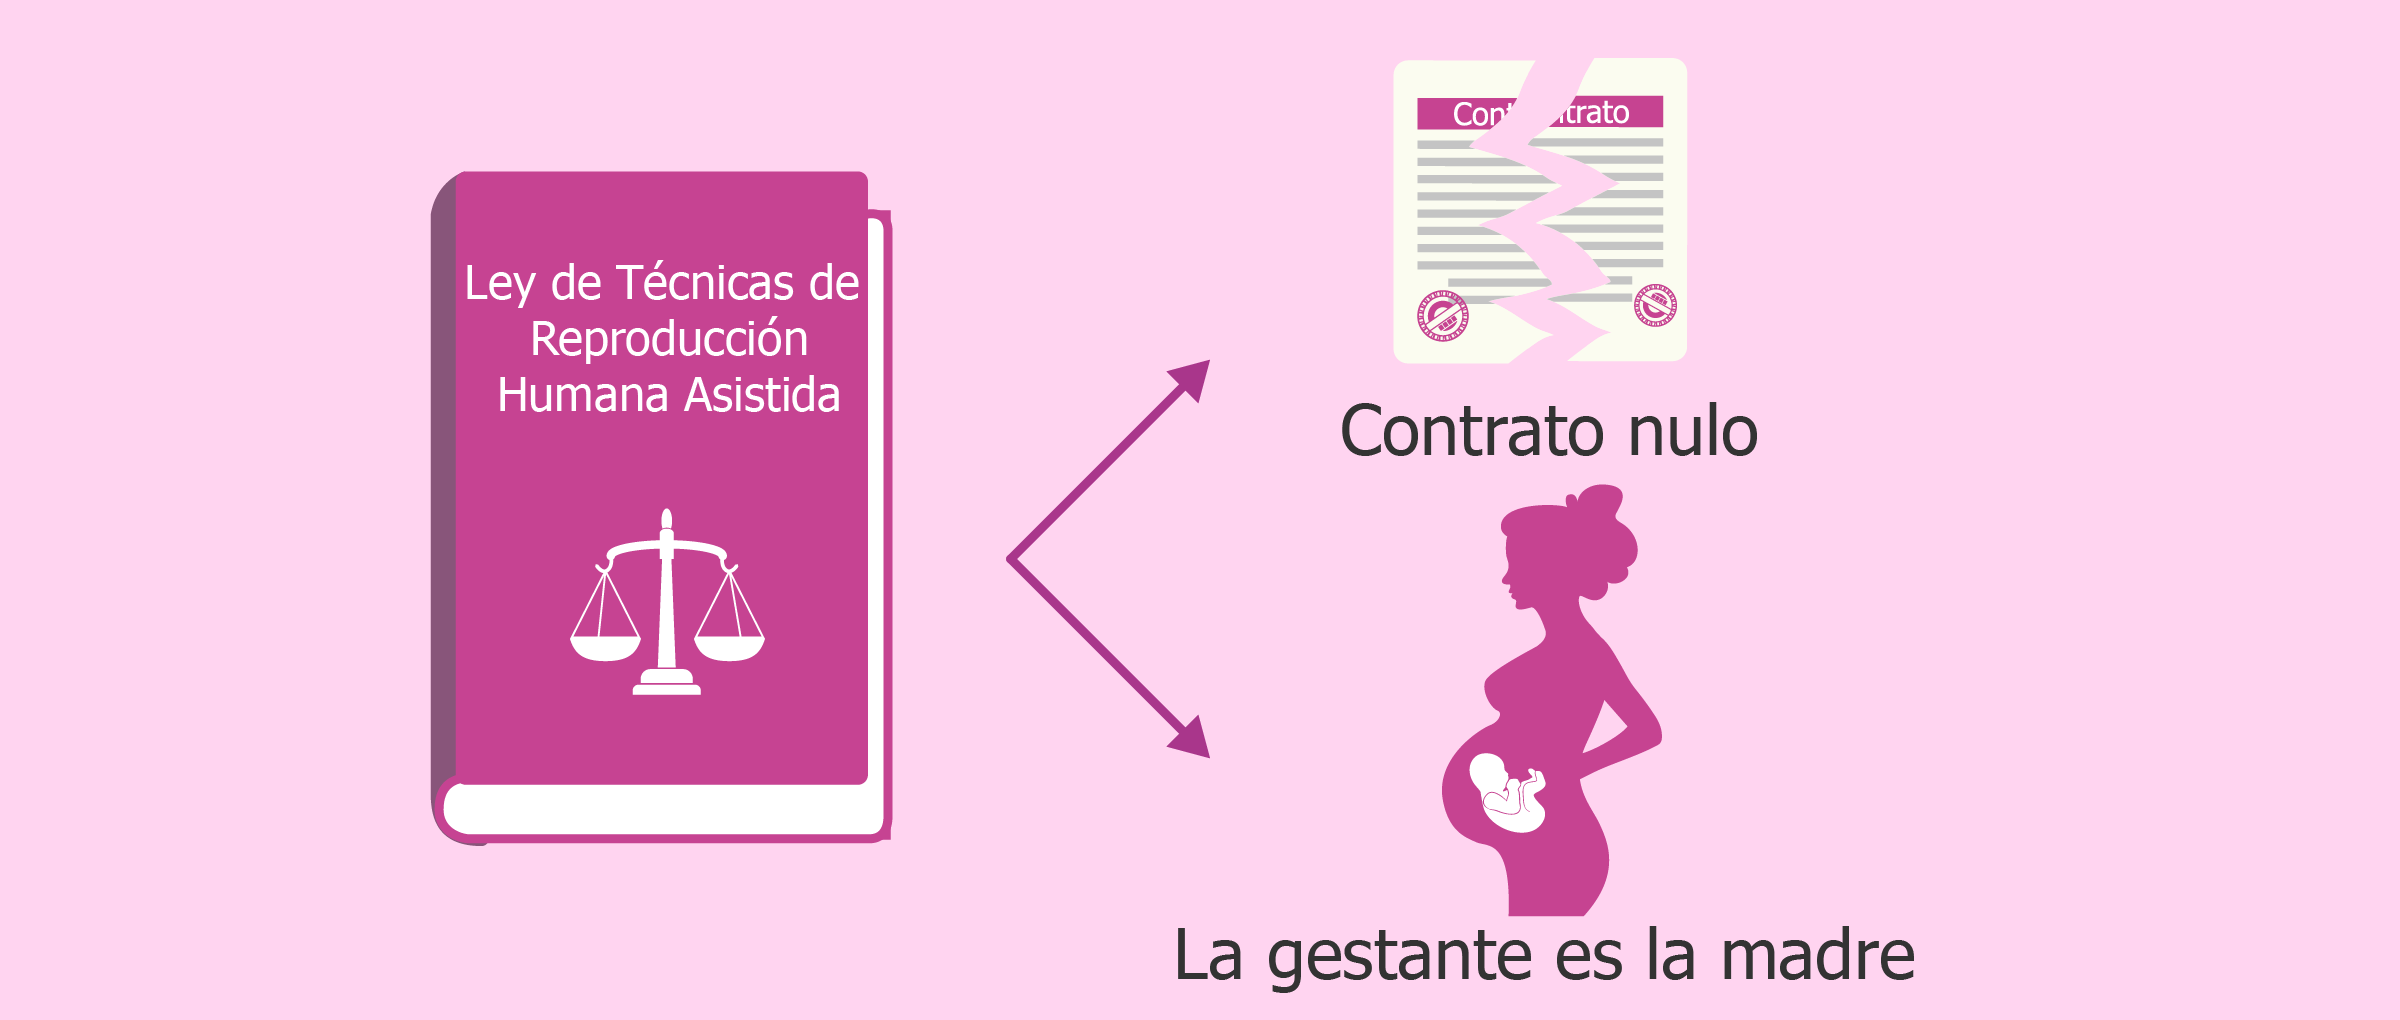 Artículo 10 de la ley de reproducción humana asistida